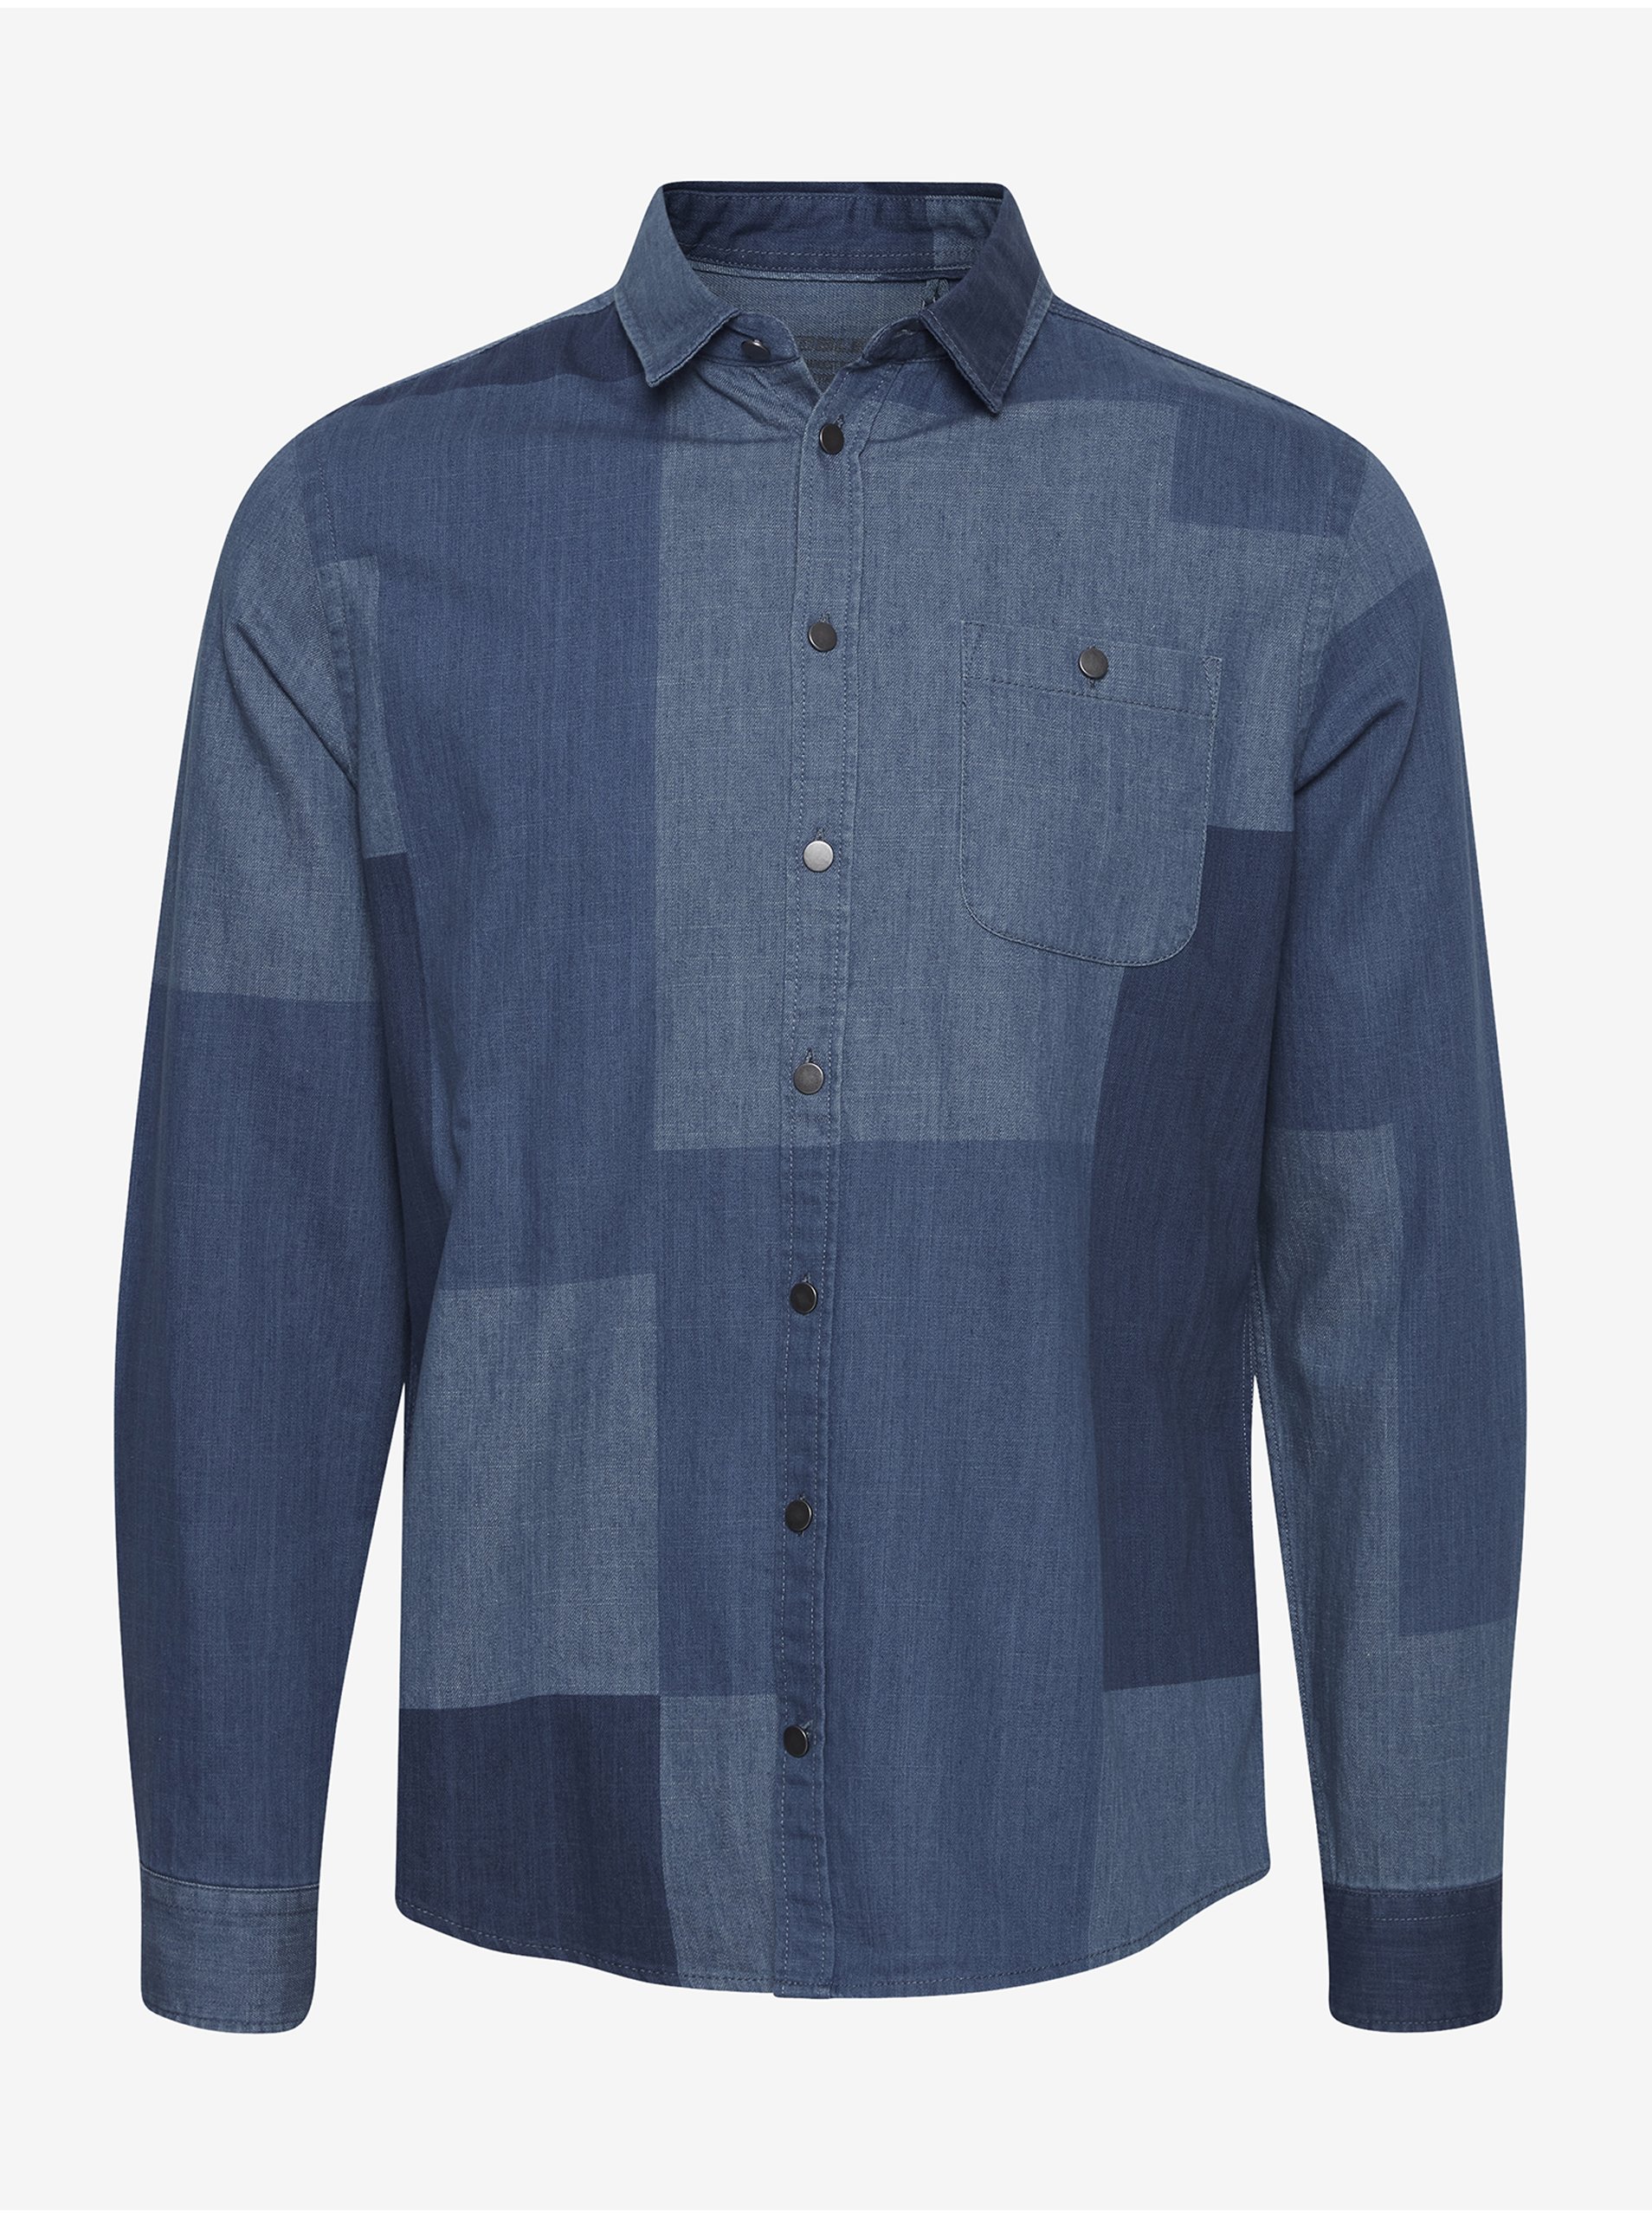 E-shop Modrá džínová vzorovaná košile Blend Patchwork